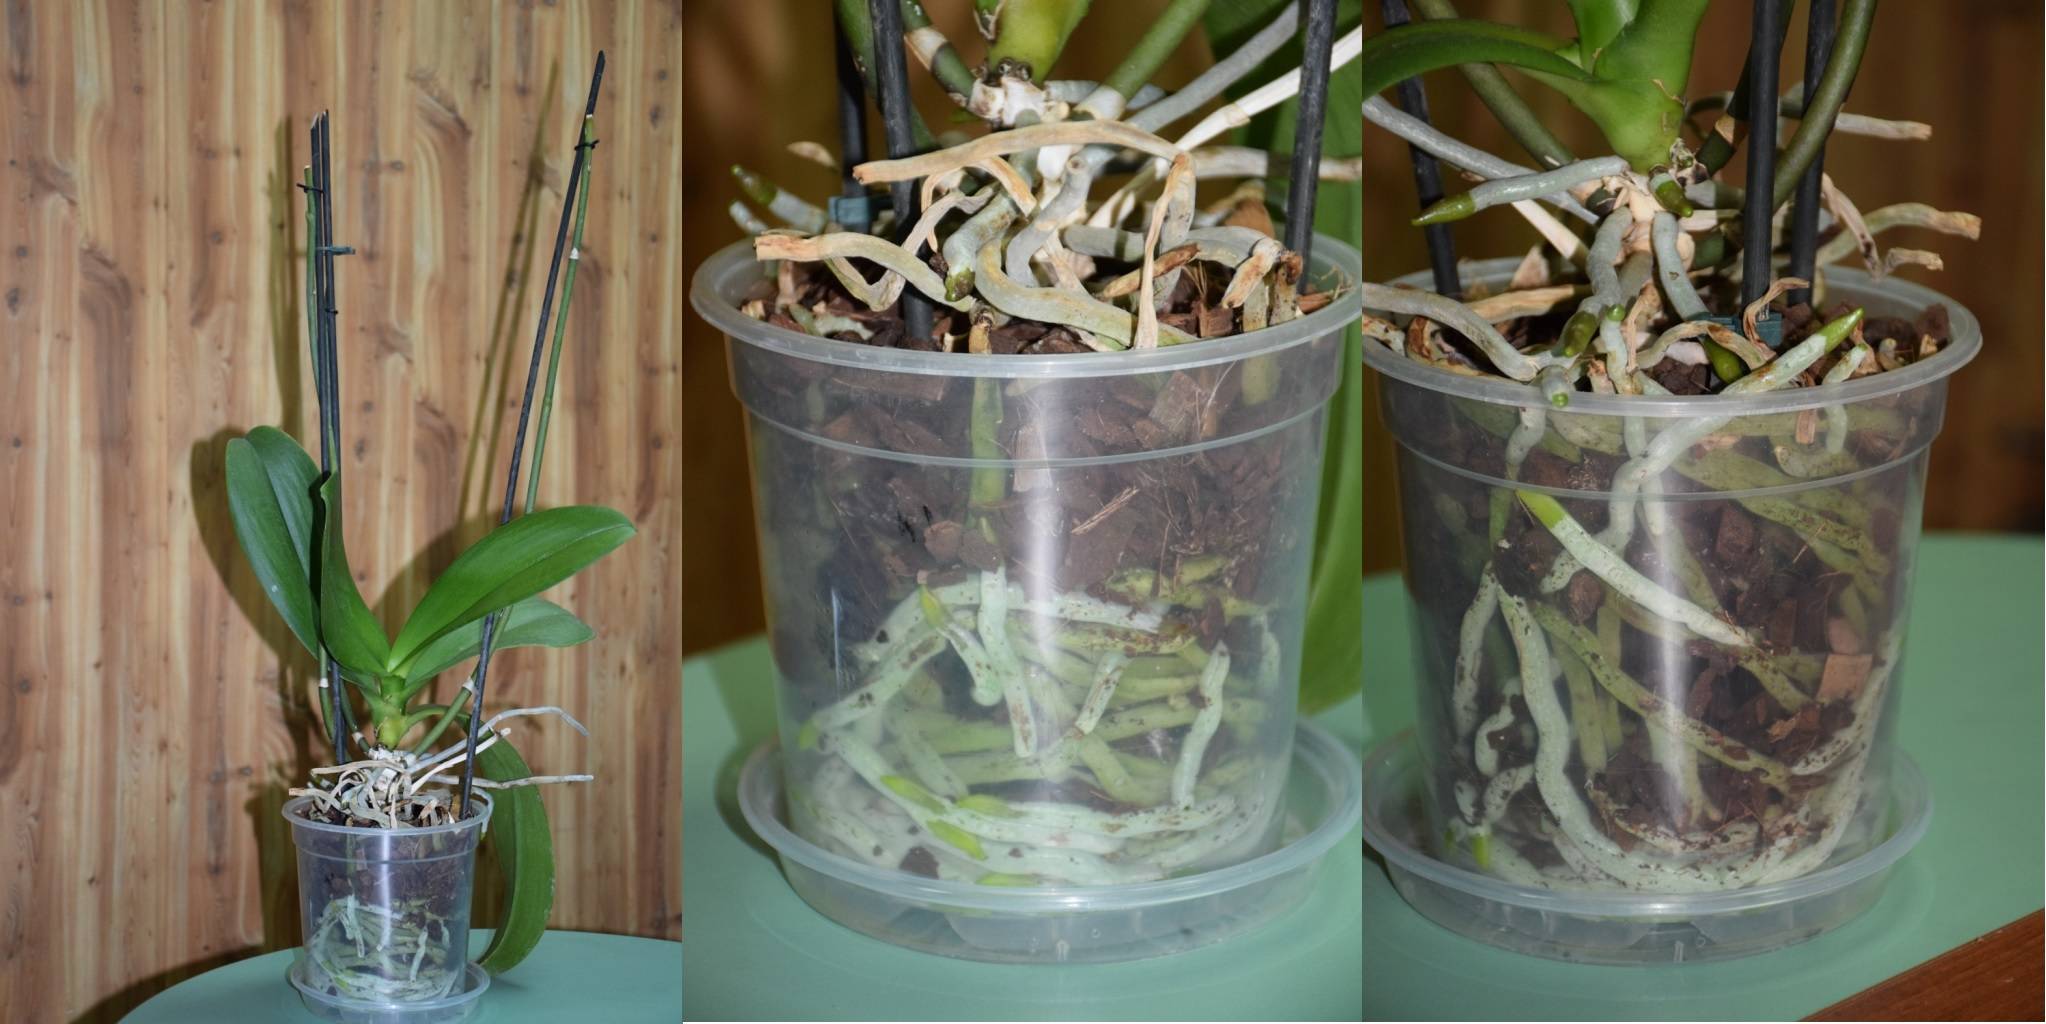 Пошаговая пересадка орхидеи в домашних условиях: правила и особенности пересадки